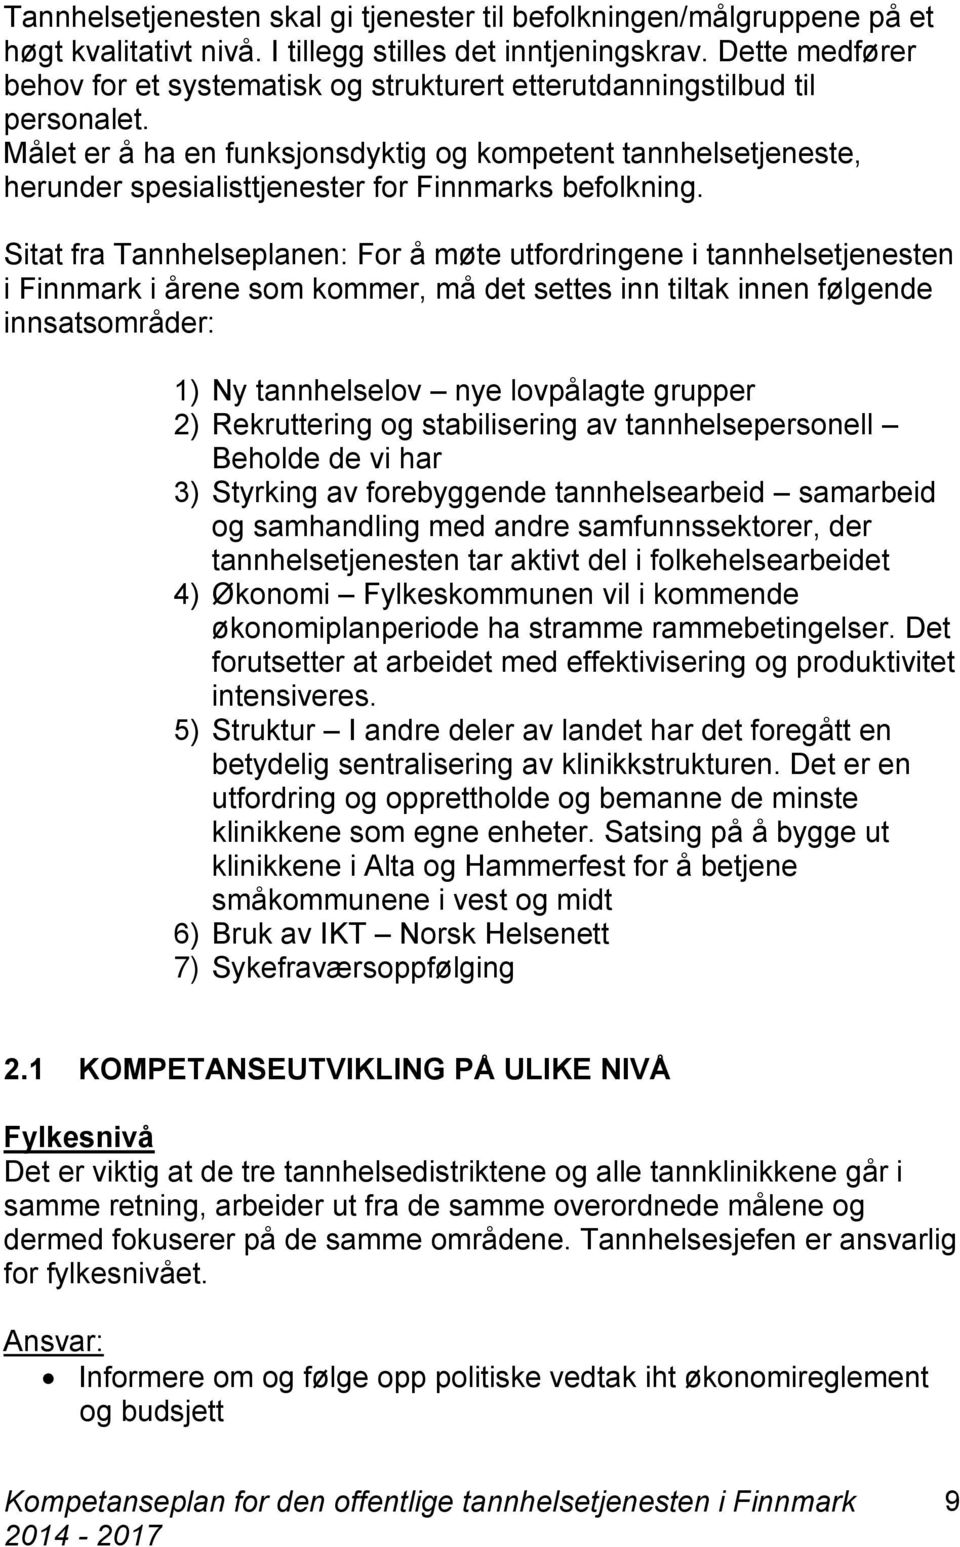 Målet er å ha en funksjonsdyktig og kompetent tannhelsetjeneste, herunder spesialisttjenester for Finnmarks befolkning.